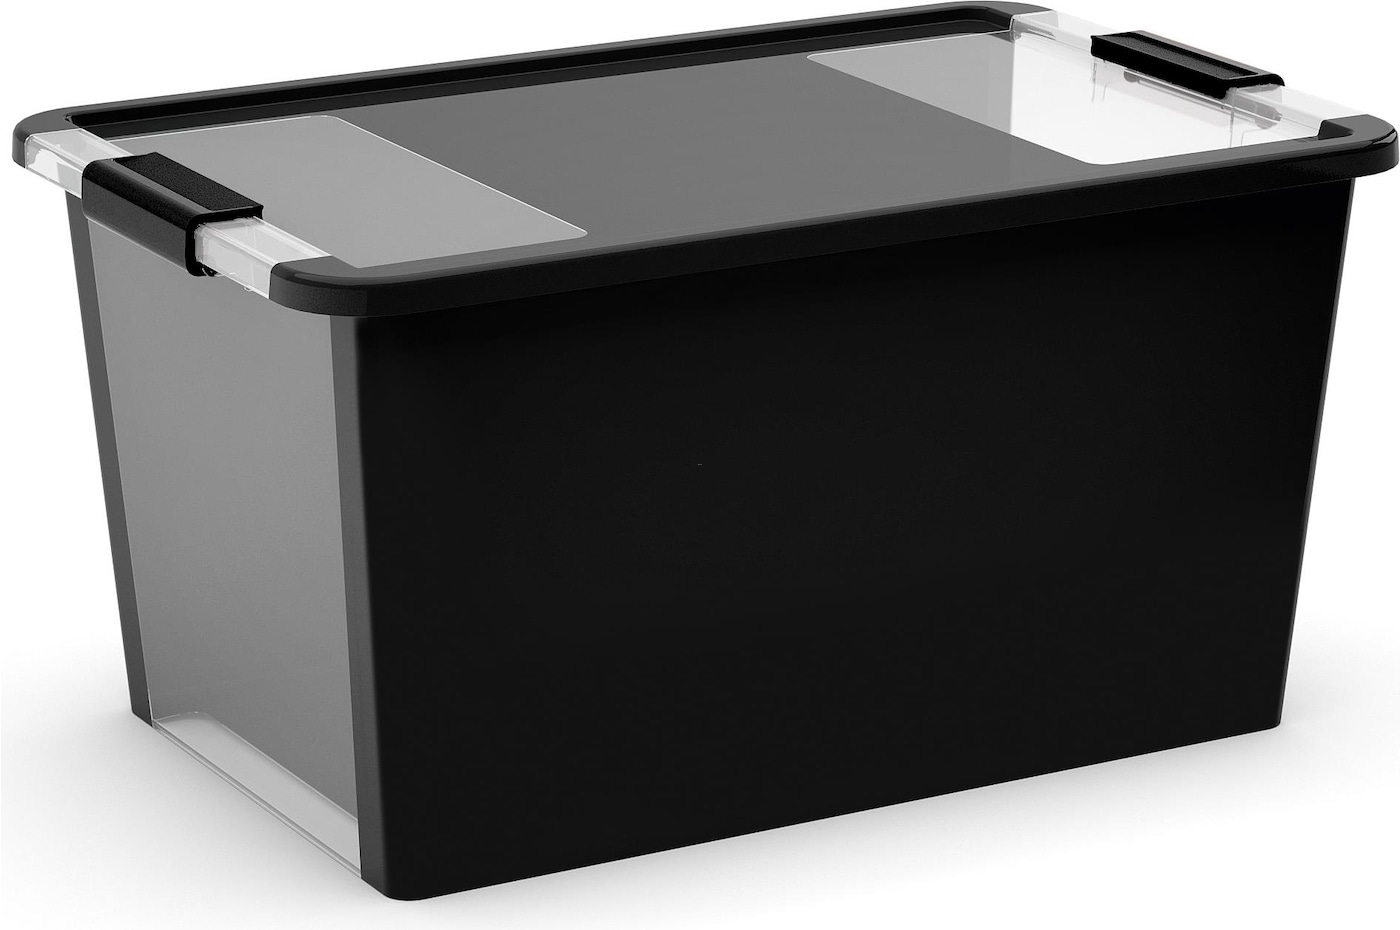 Mehrzweck Aufbewahrungsbehälter STORAGE mit Deckel | HxBxT 28x55x35cm | 40 Liter | Schwarz | Behälter, Box, Aufbewahrungsbehälter, Aufbewahrungsbox